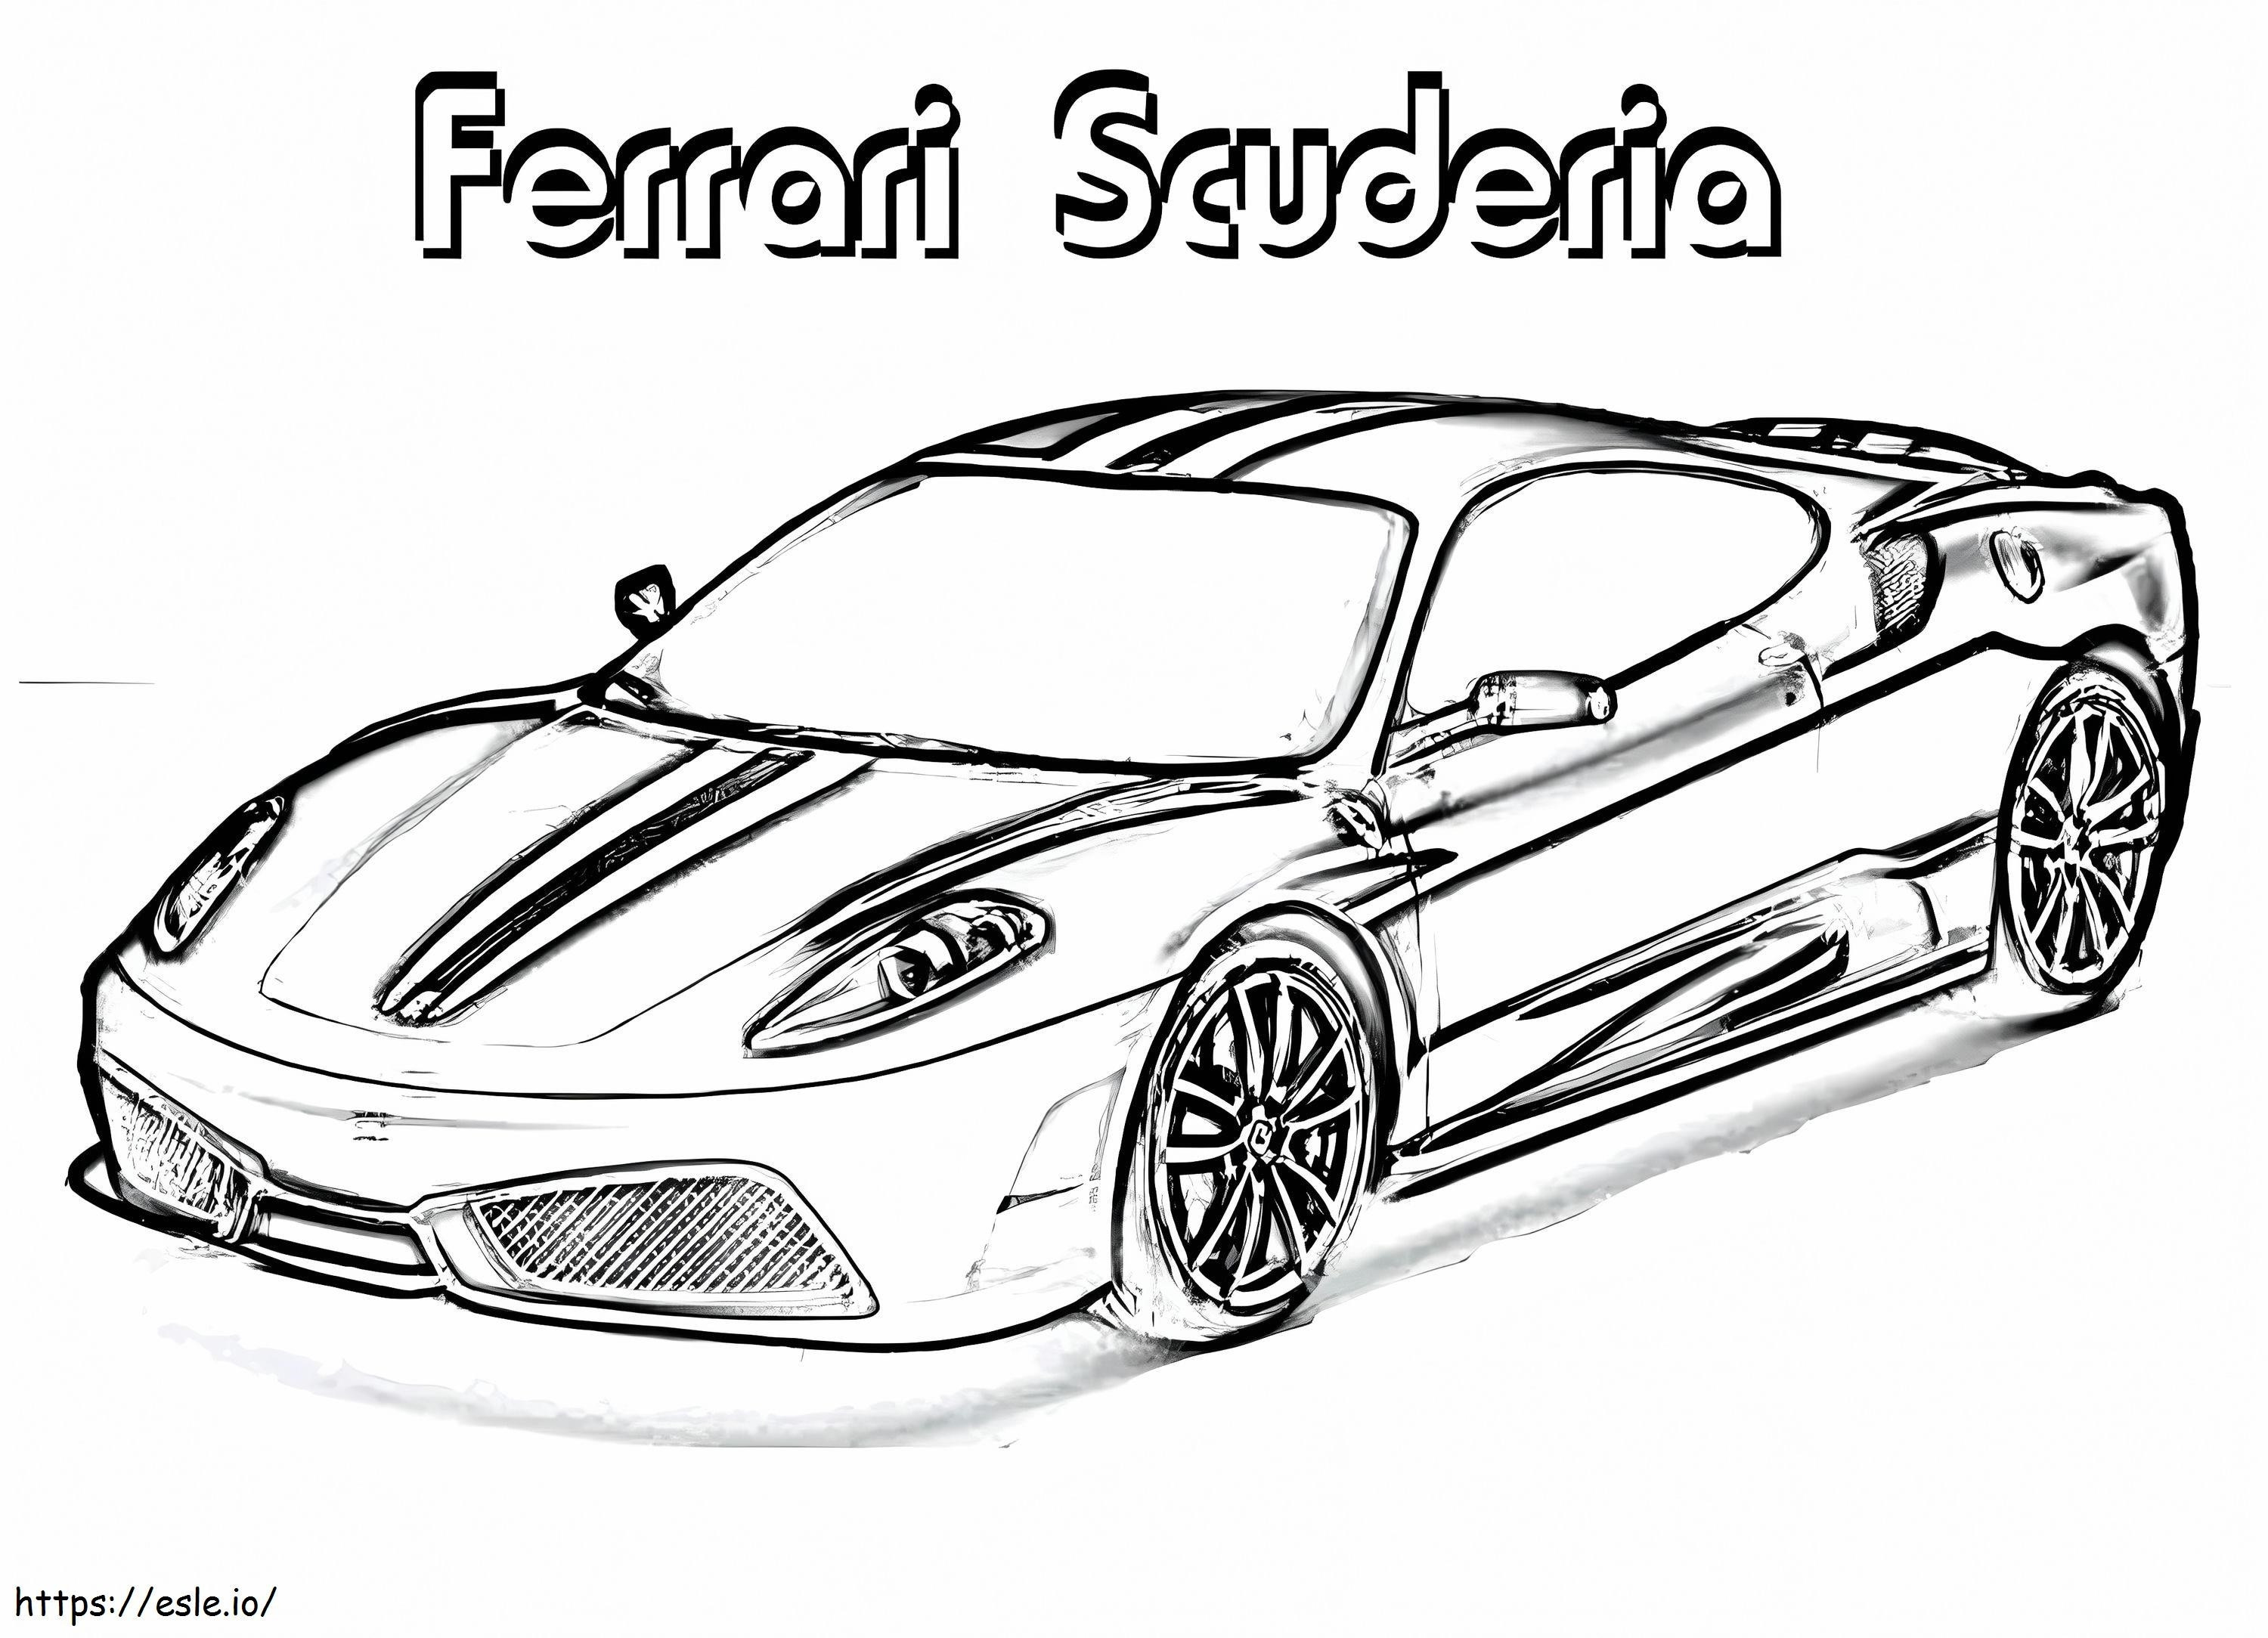 Ferrari Scuderia coloring page